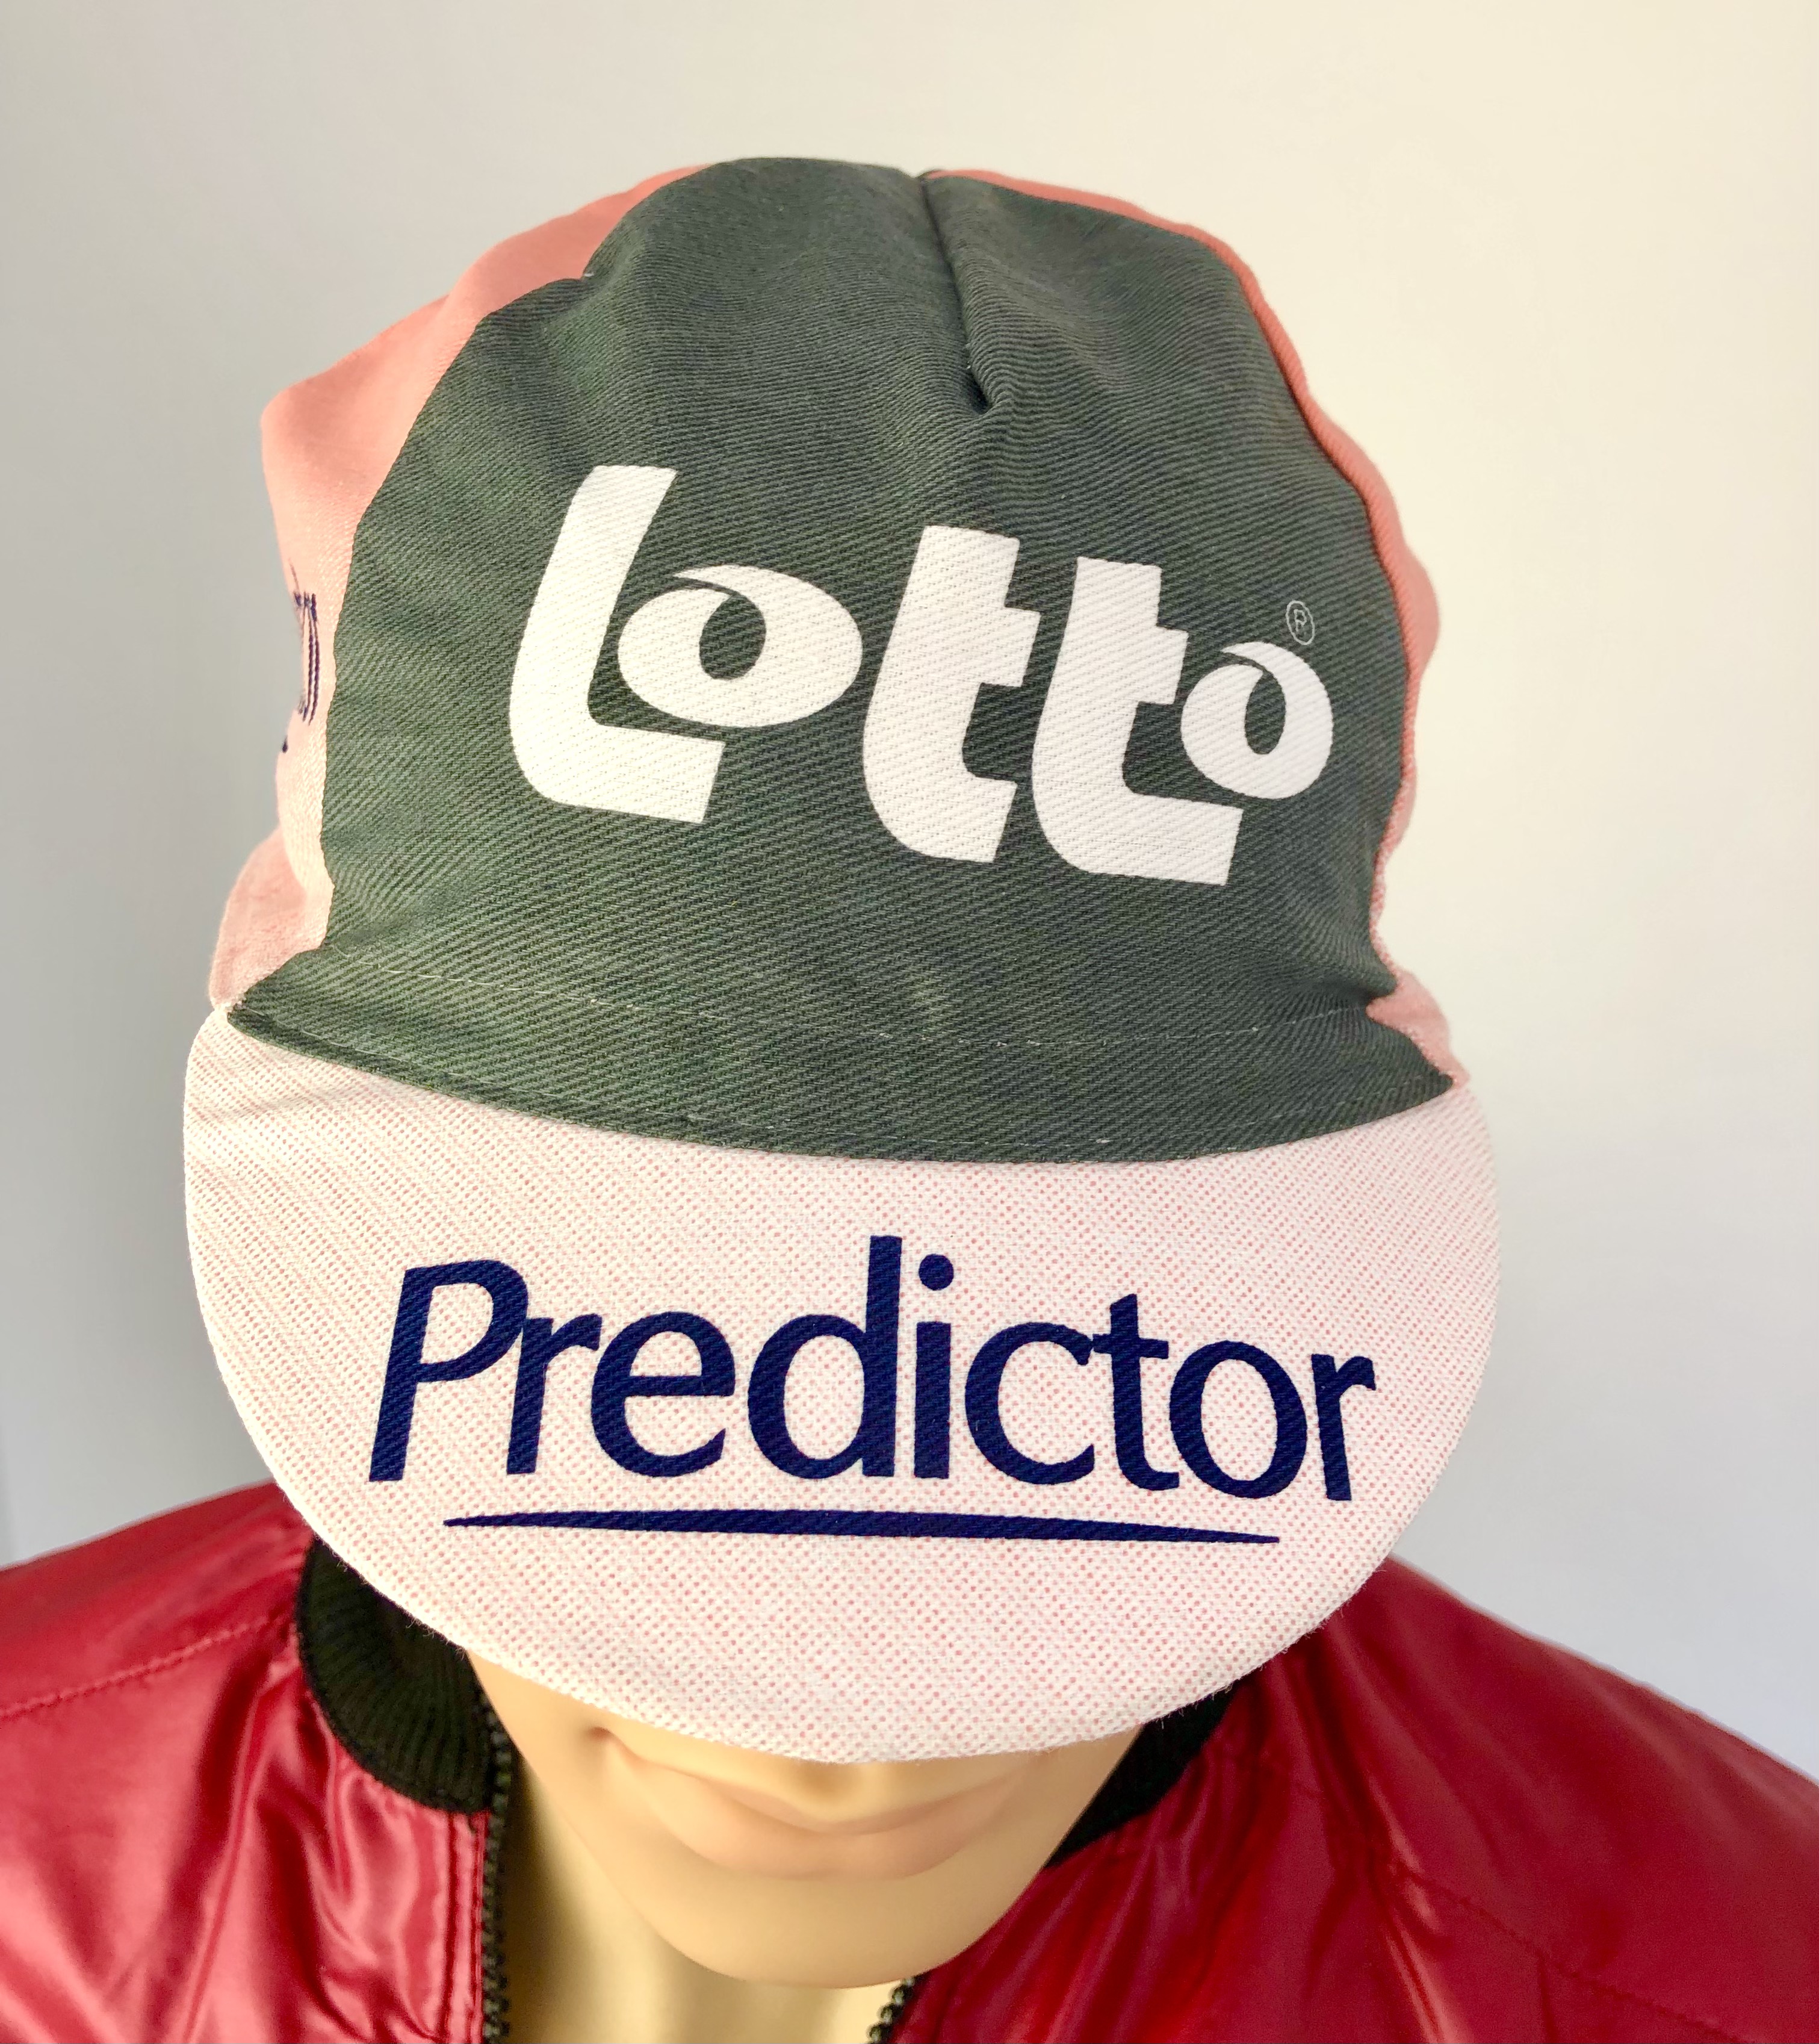 La Casquette Team  Lotto- Predictor